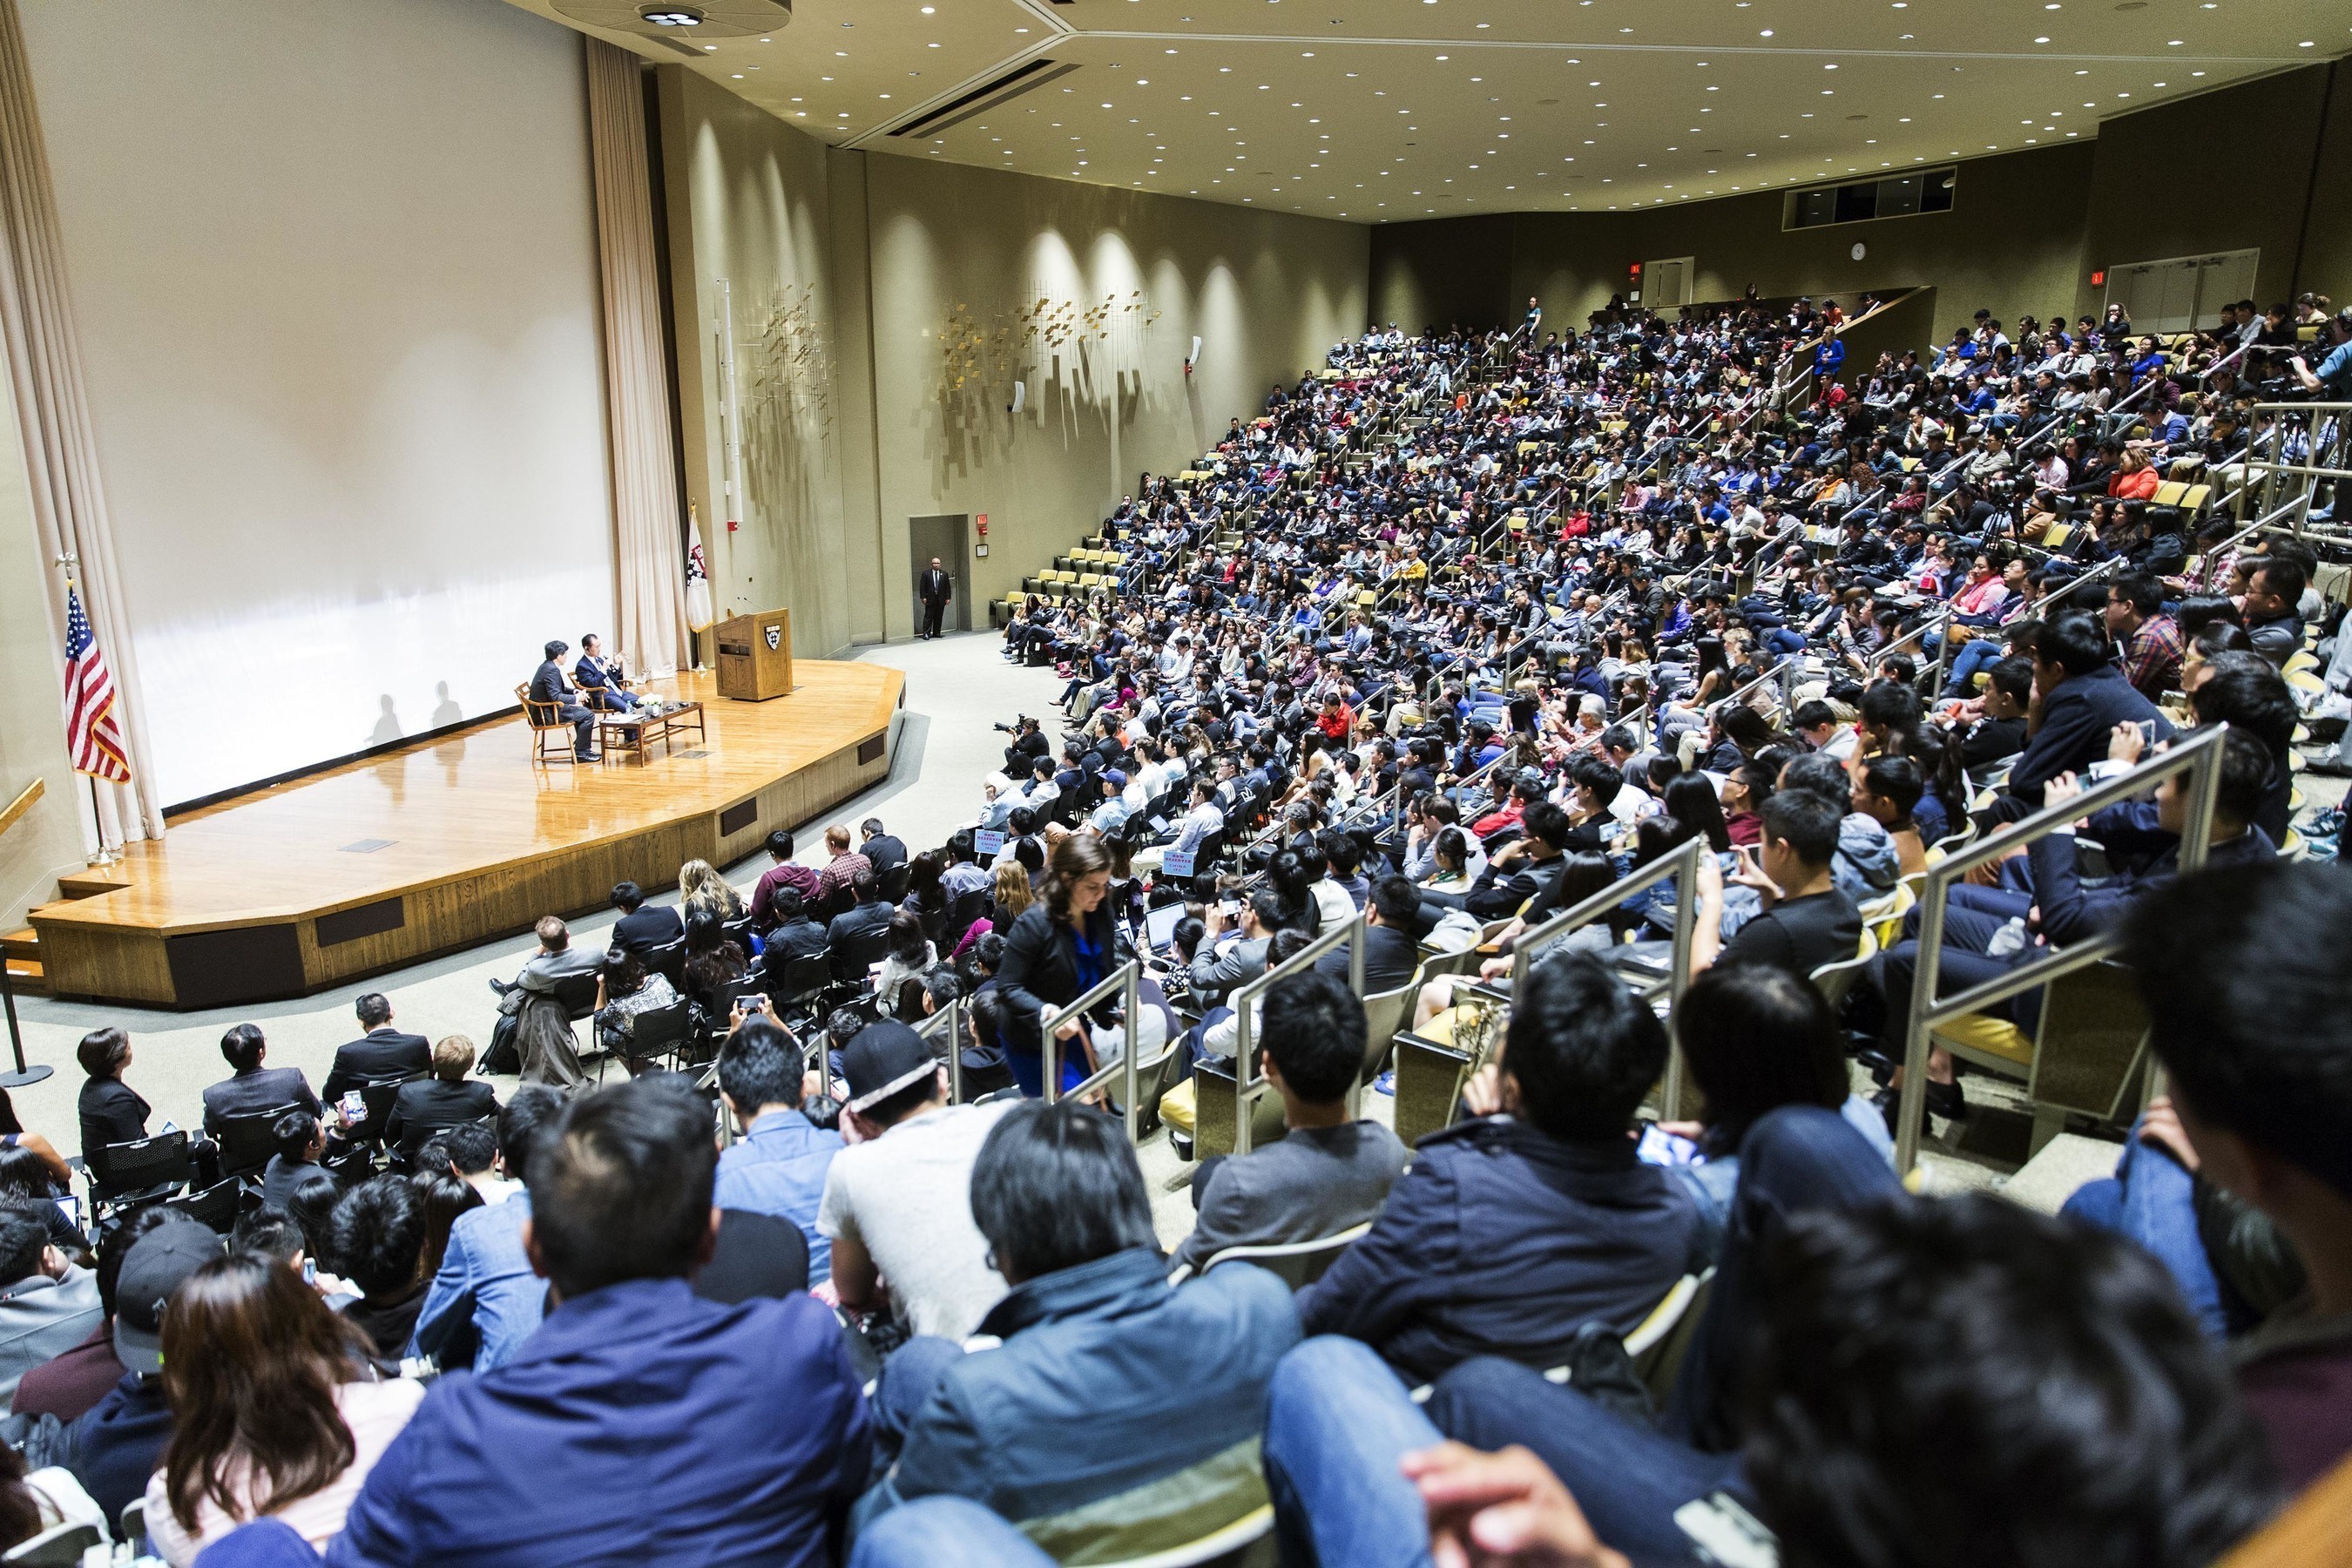 Wanda Dalian Chairman Wang Jianlin Gives a Lecture at Harvard